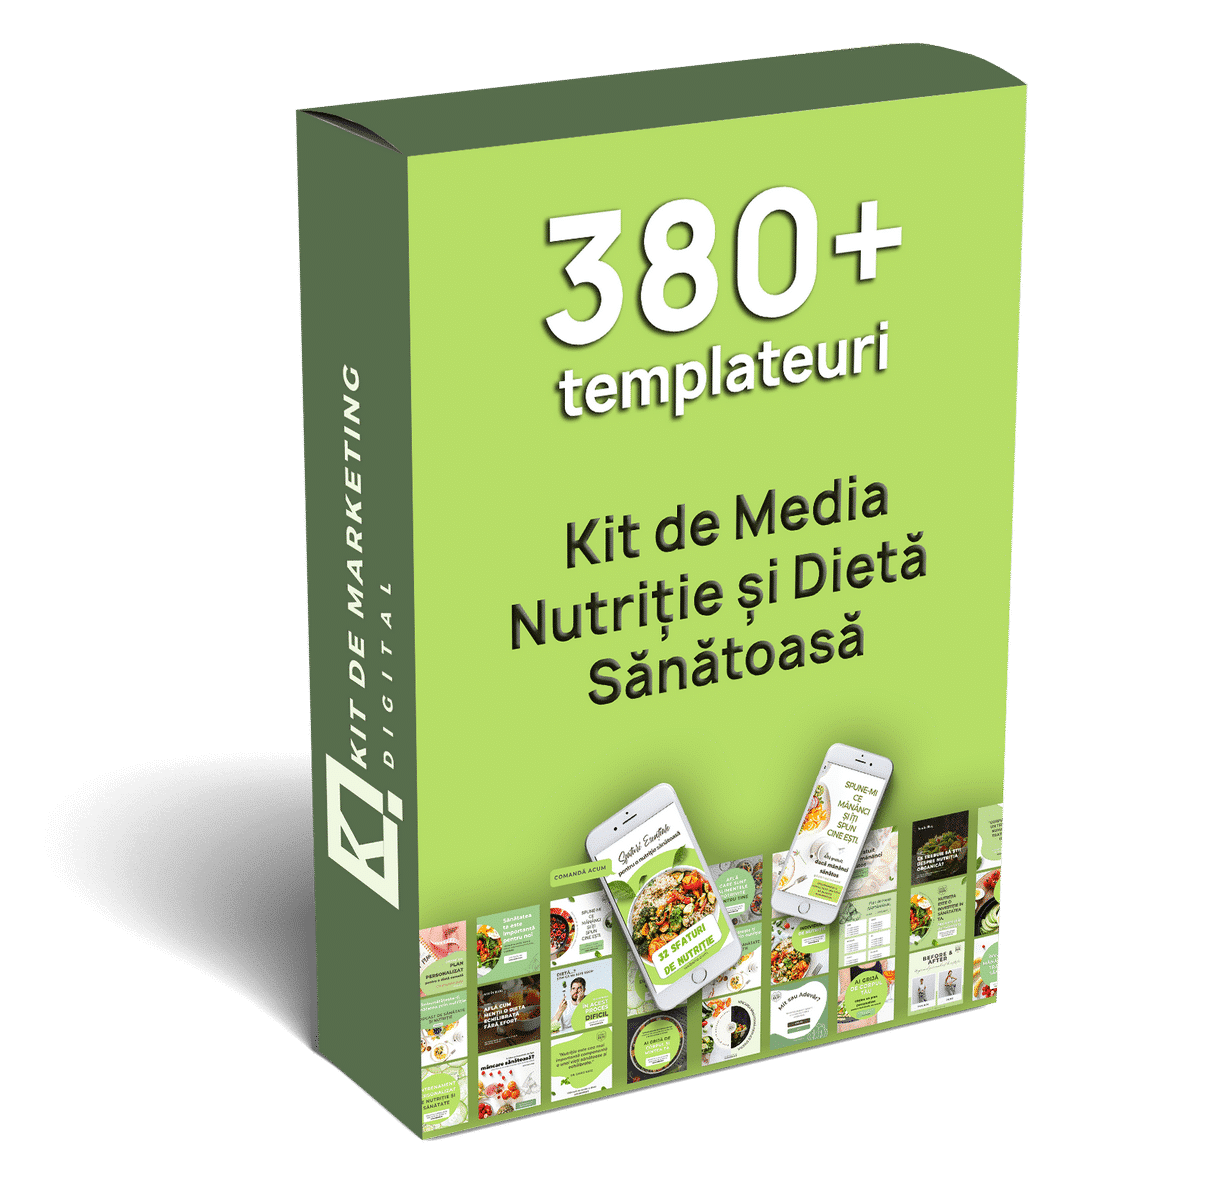 Kit de Media Nutriție și Dietă Sănătoasă